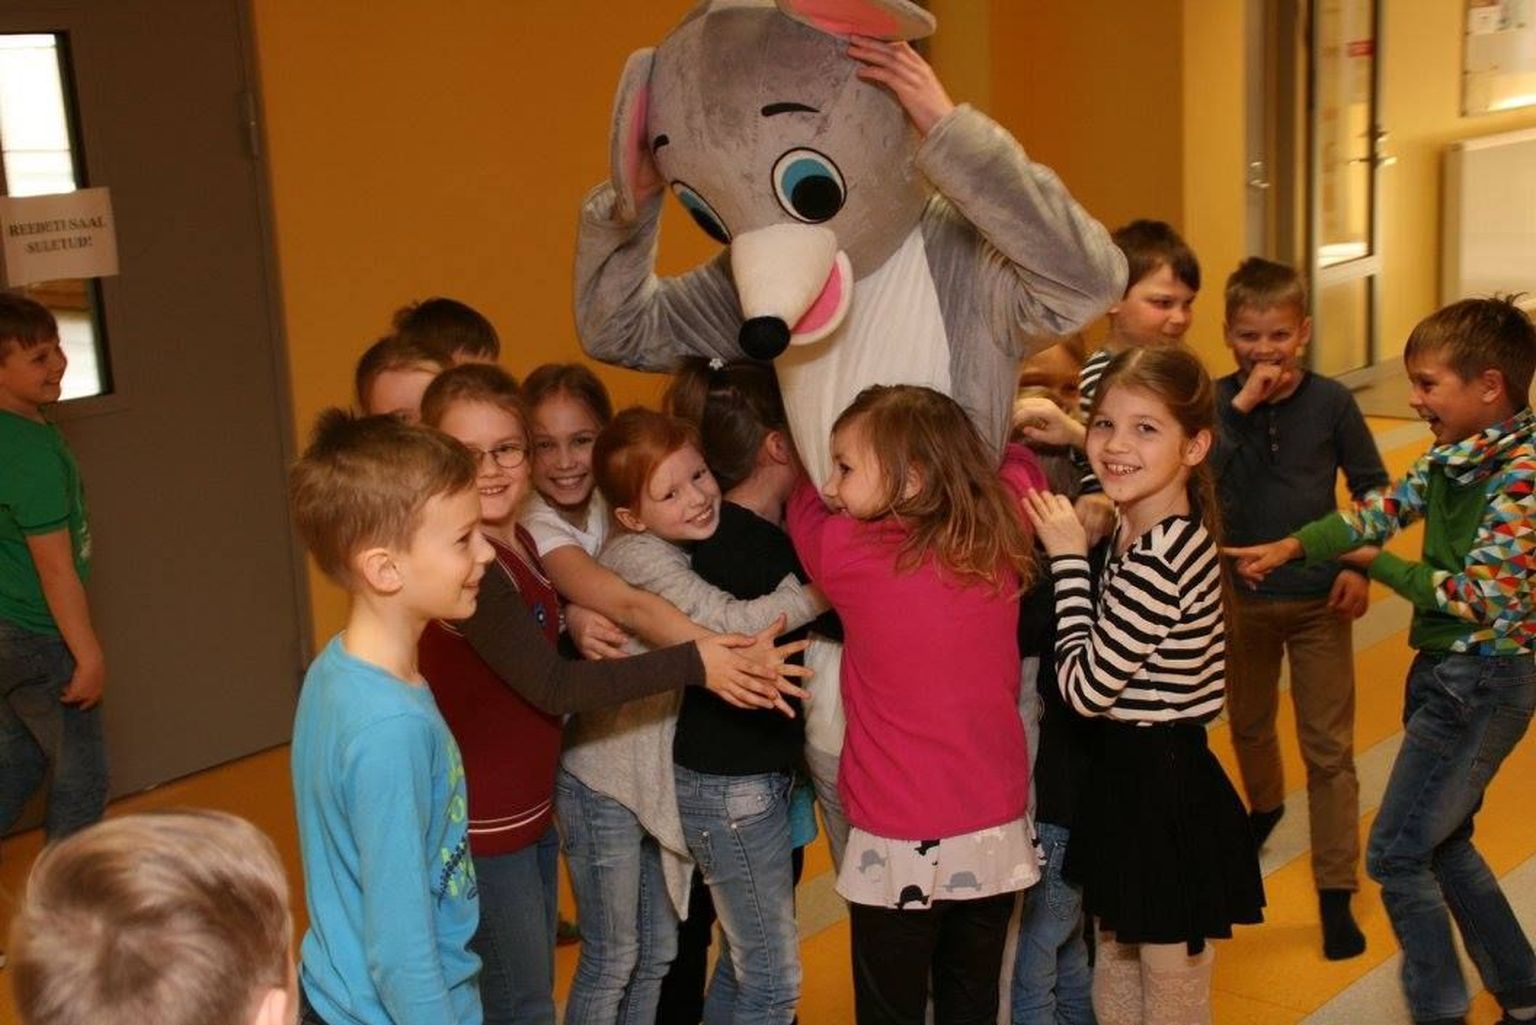 Eesti 4H maskott hiir Hubert oli Paikuse koolis.